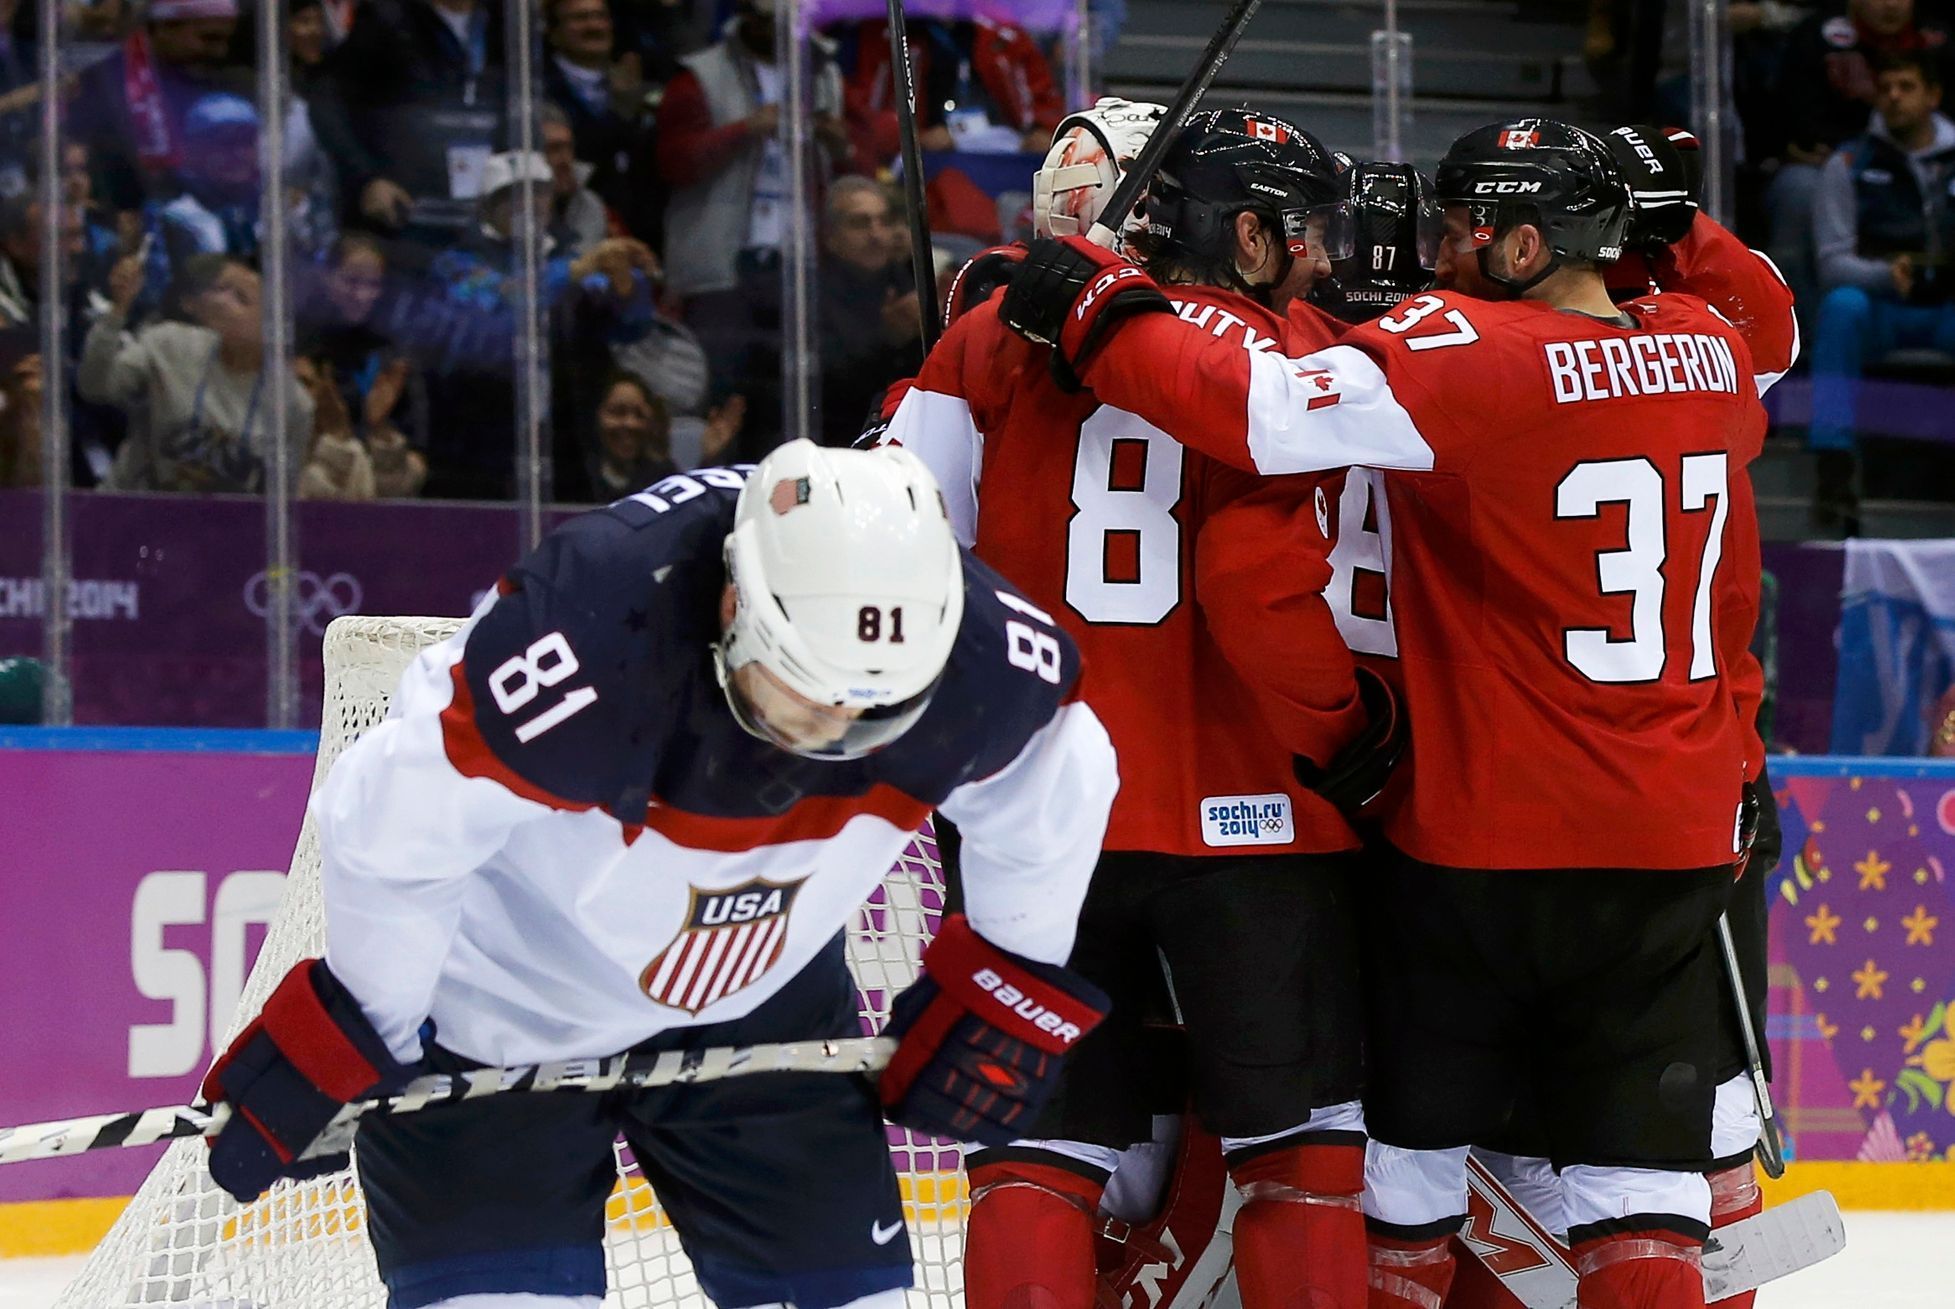 Kanada - USA: zklamaný Phil Kessel, zatímco Kanada slaví postup do finále